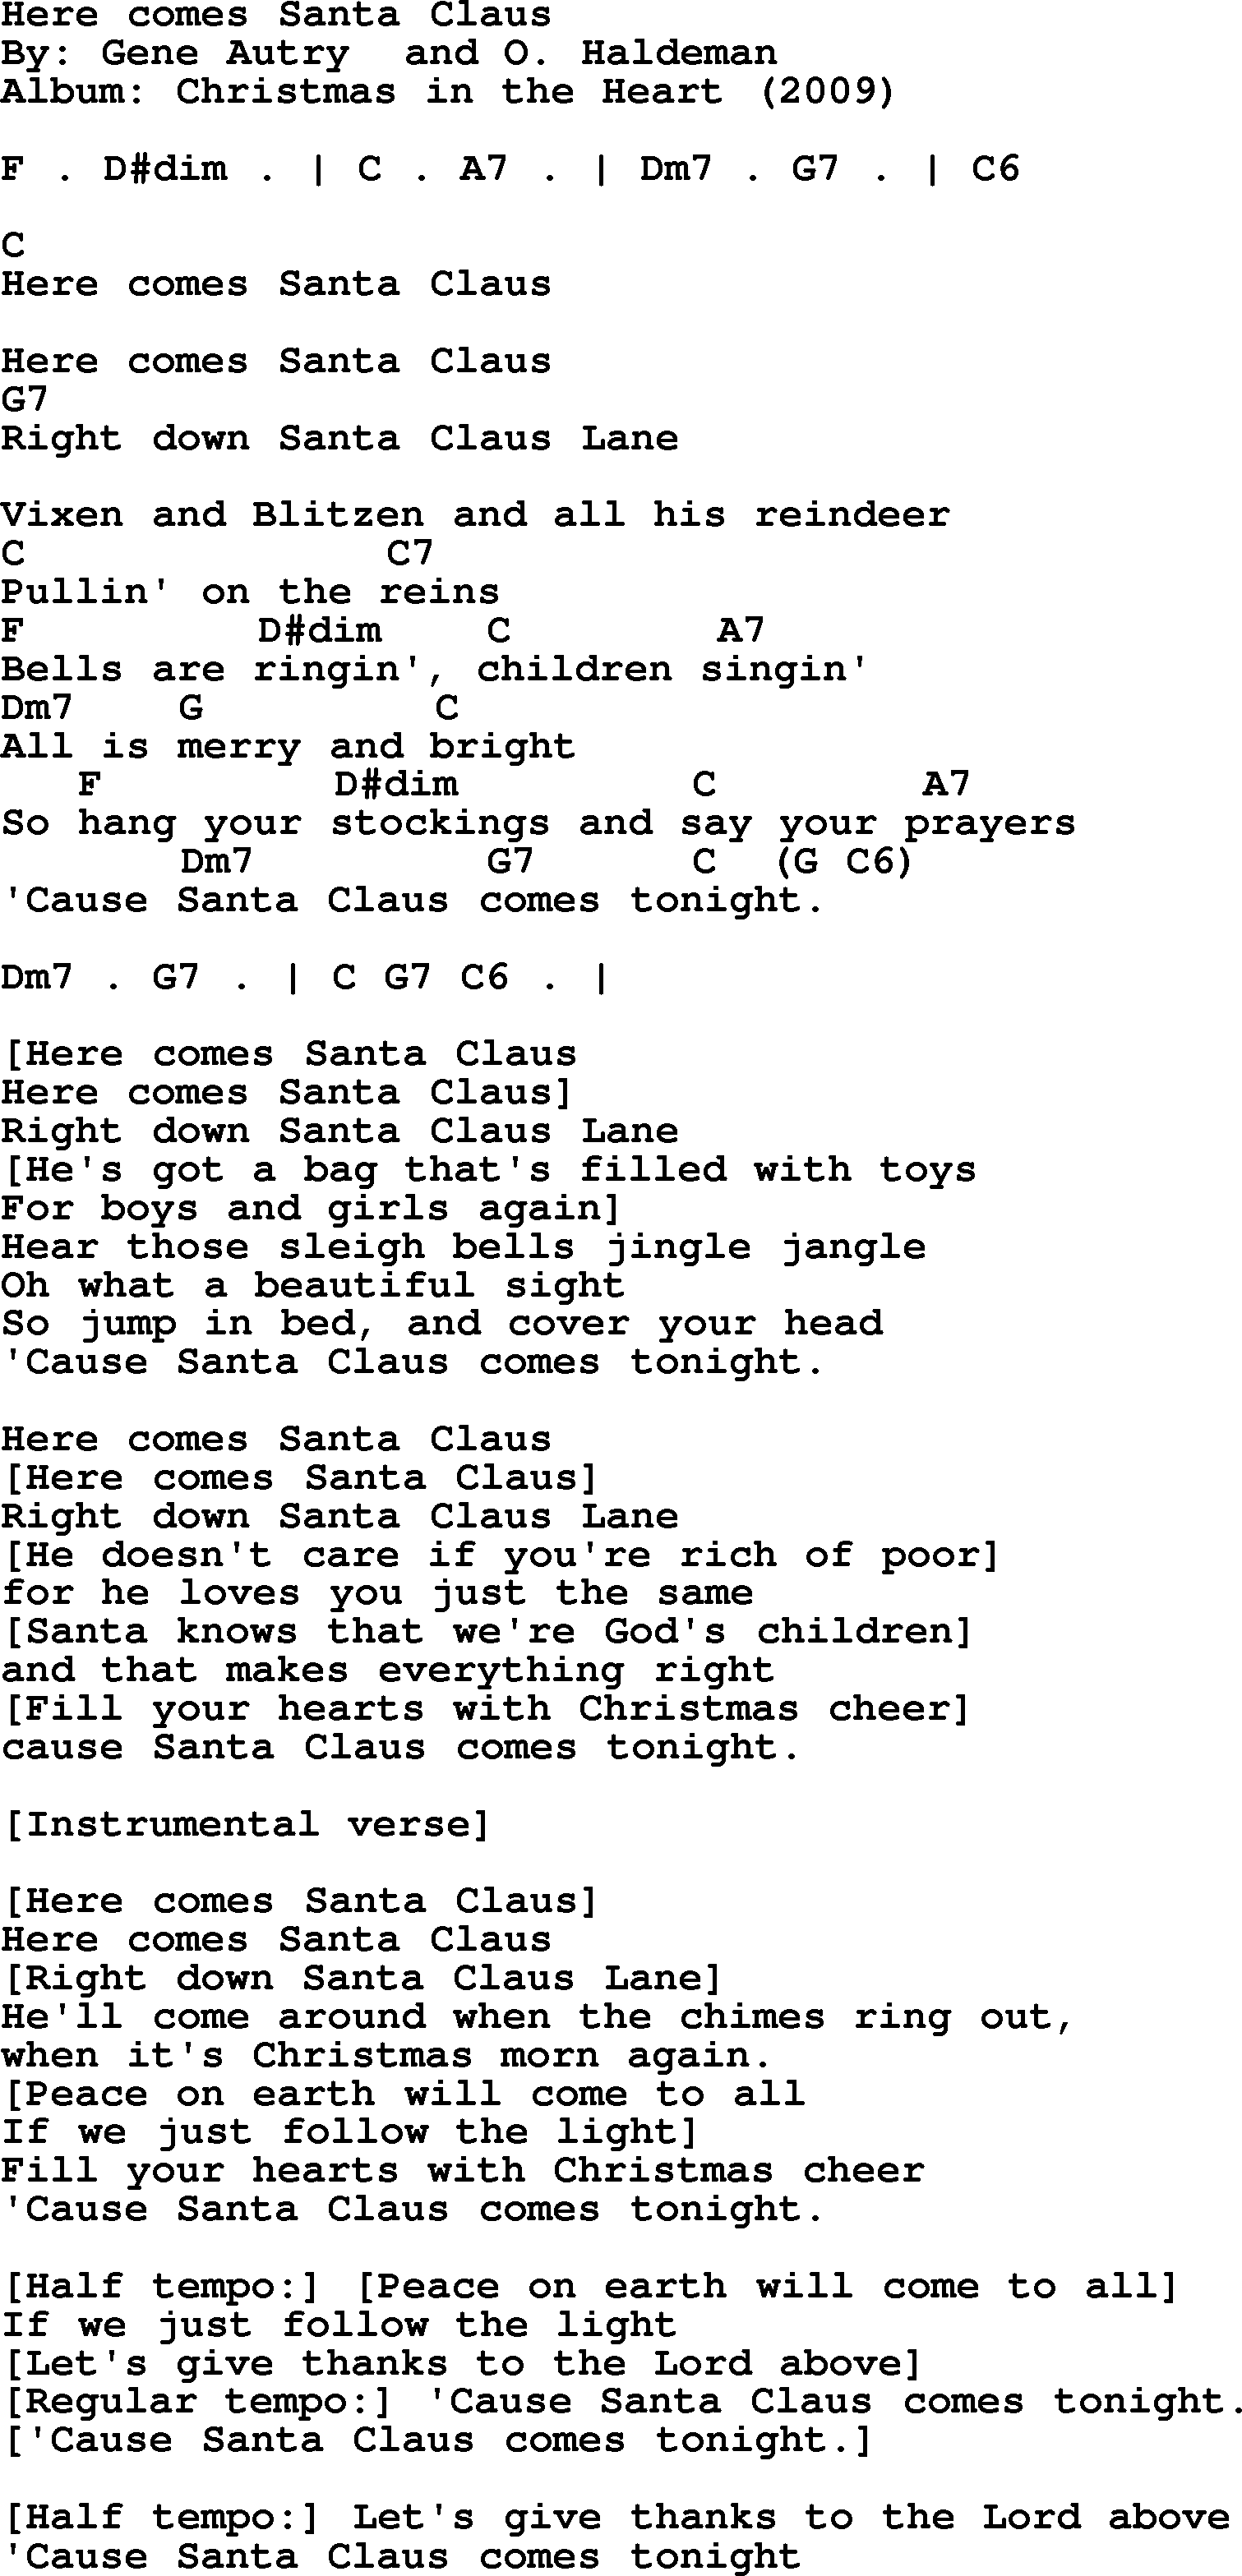 Bob Dylan song - Here comes Santa Claus, lyrics and chords